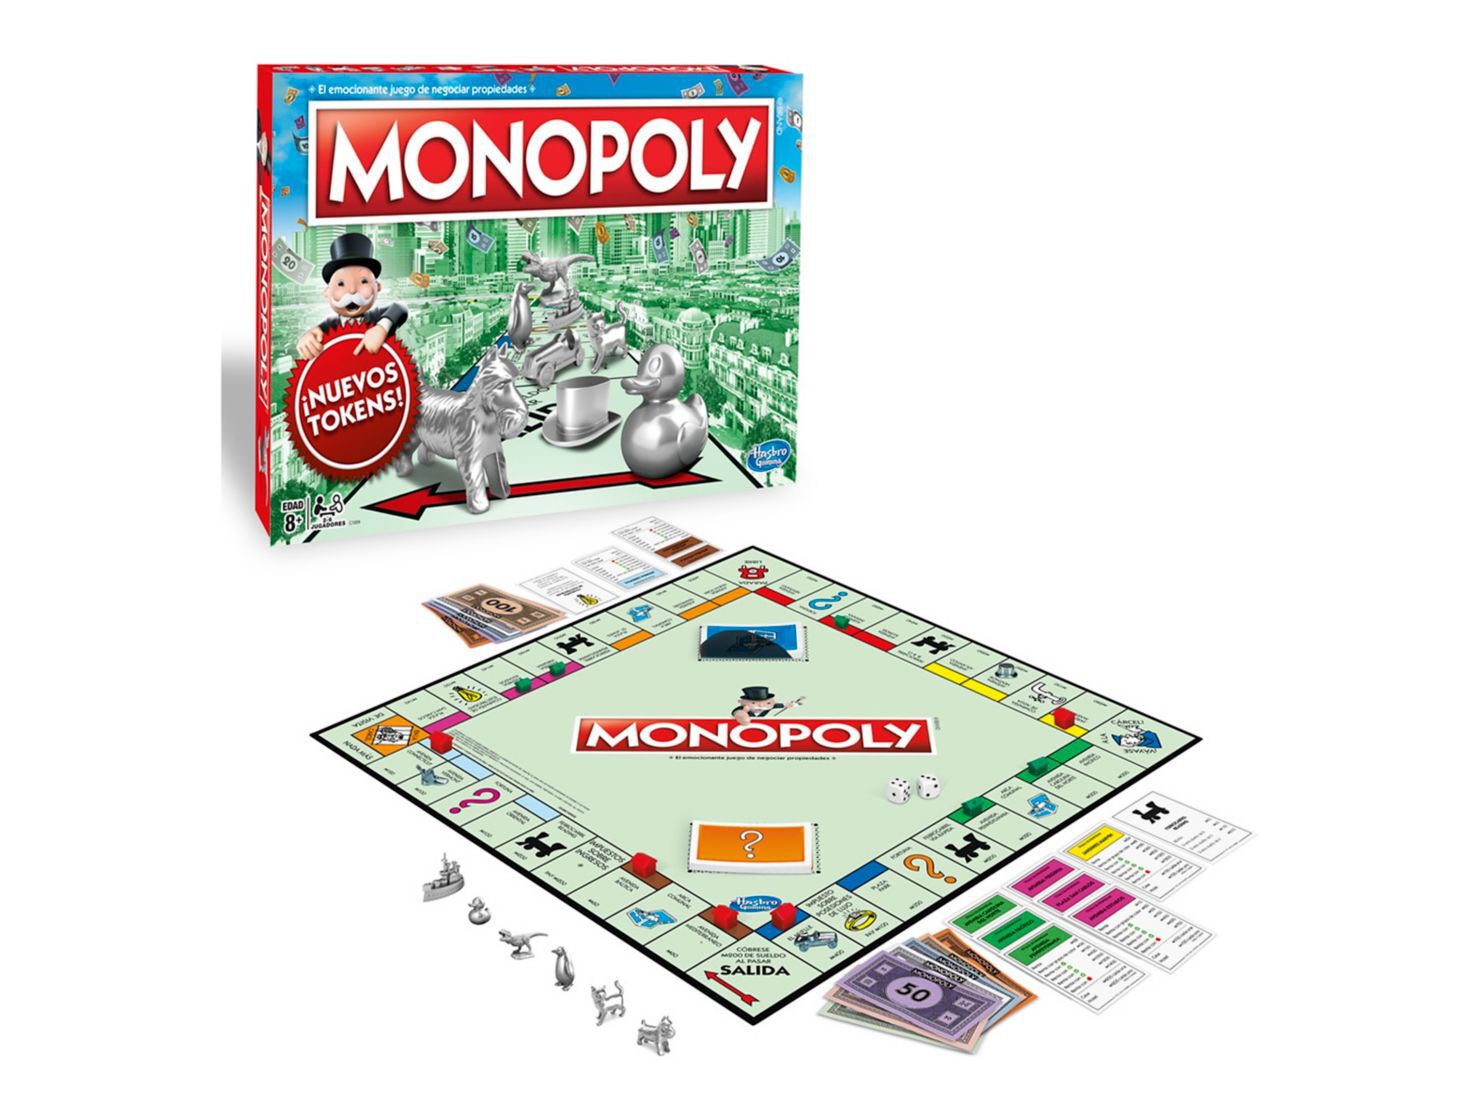 Игра монополия hasbro. Монополия классика Monopoly c1009. Настольная игра Monopoly классическая обновленная c1009. Монополия от Хасбро. Игра Монополия Hasbro Gaming.